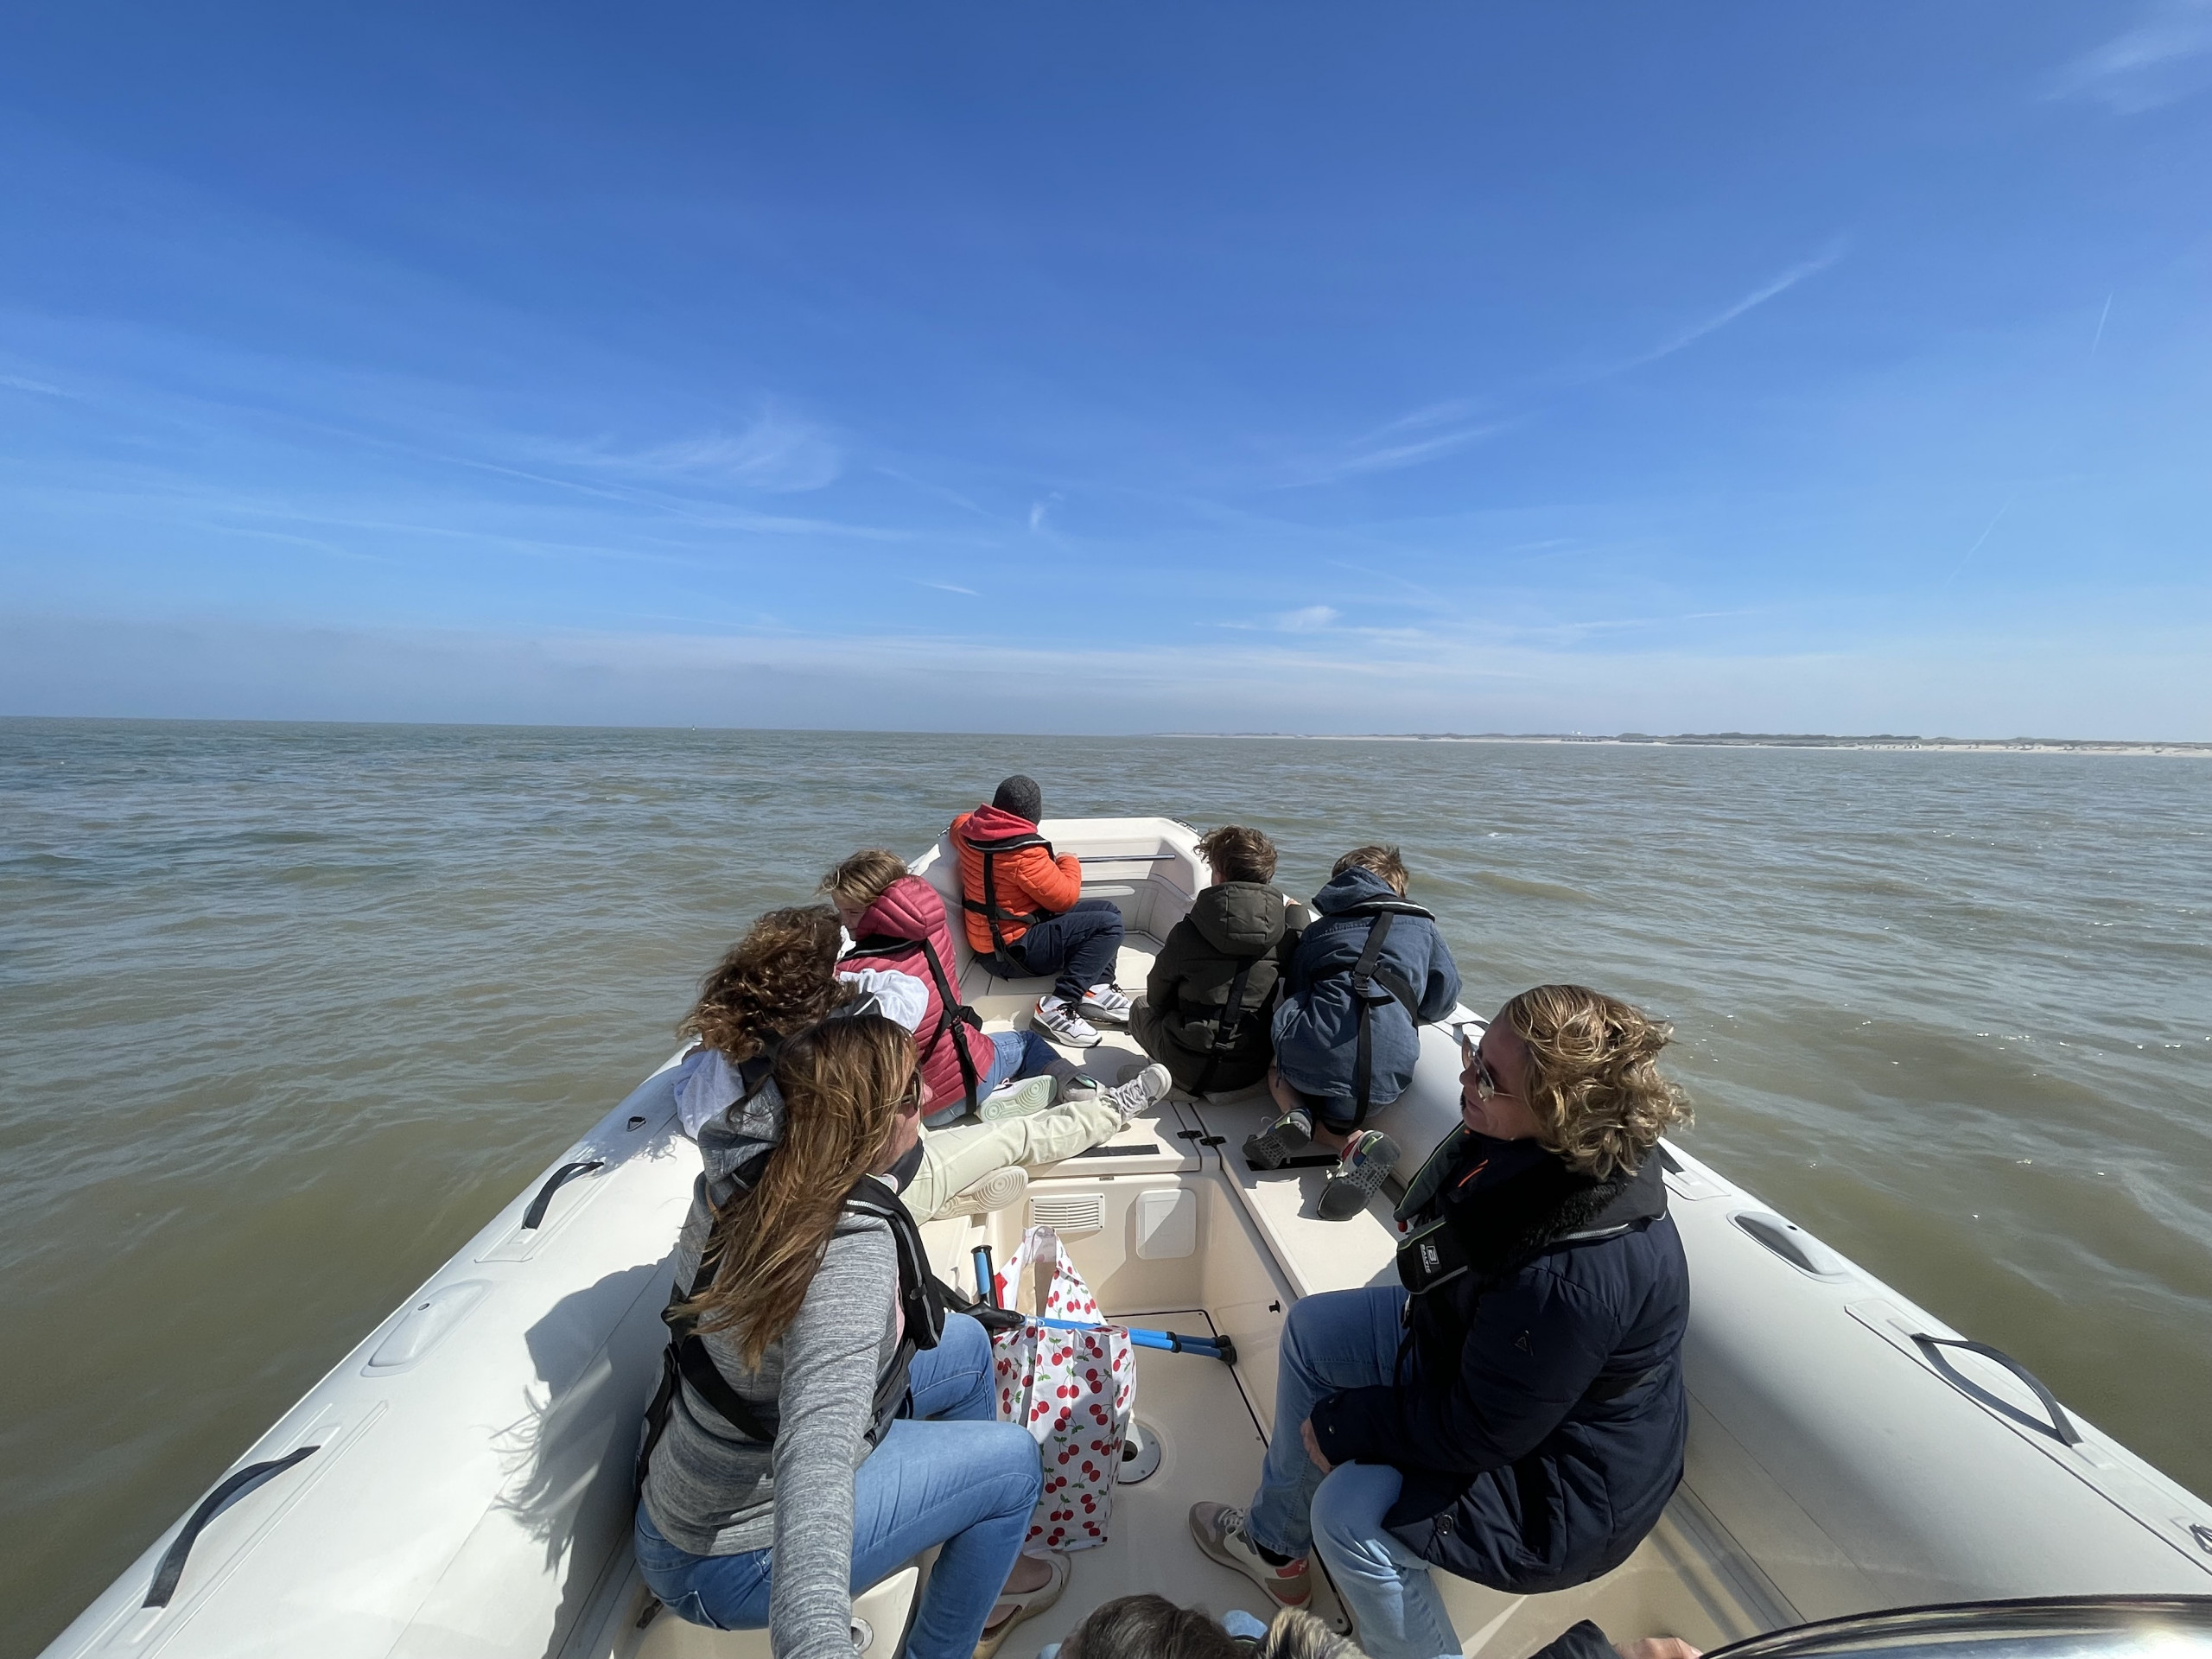 Vaarseizoen 2022 is gestart bij Knokke Boat